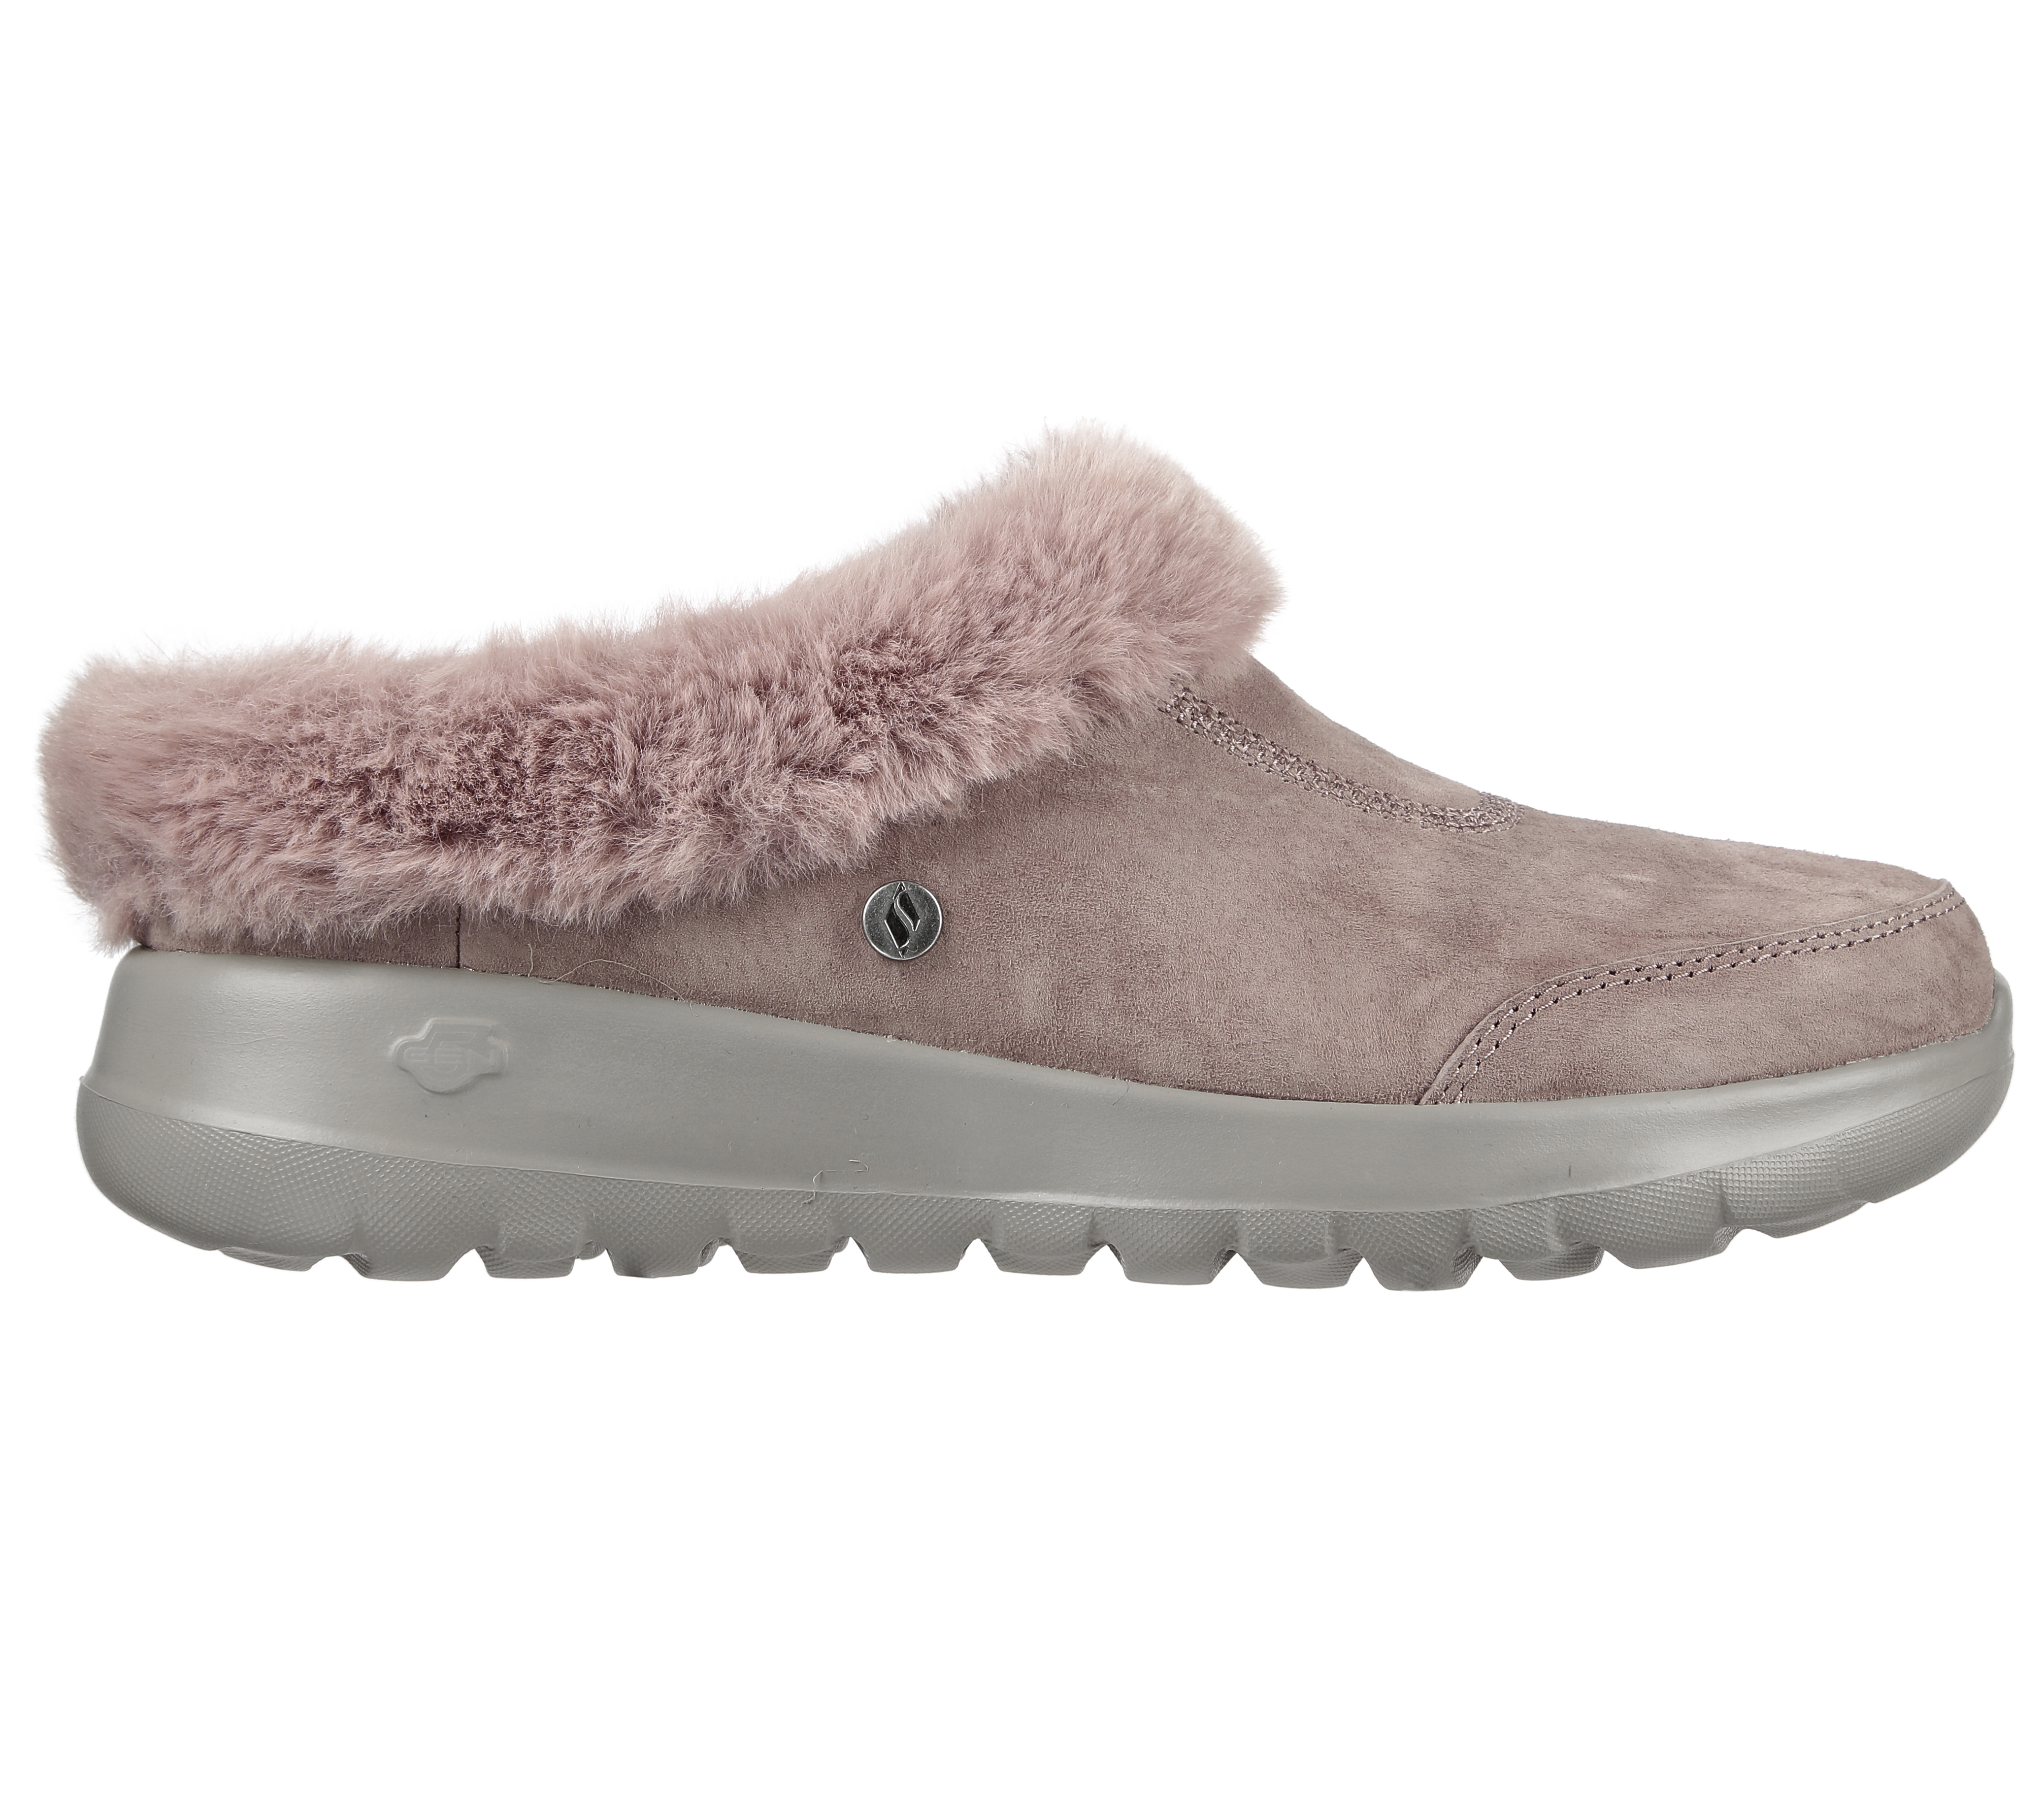 skechers gowalk suede faux fur shoes w/ memory form fit - comfy